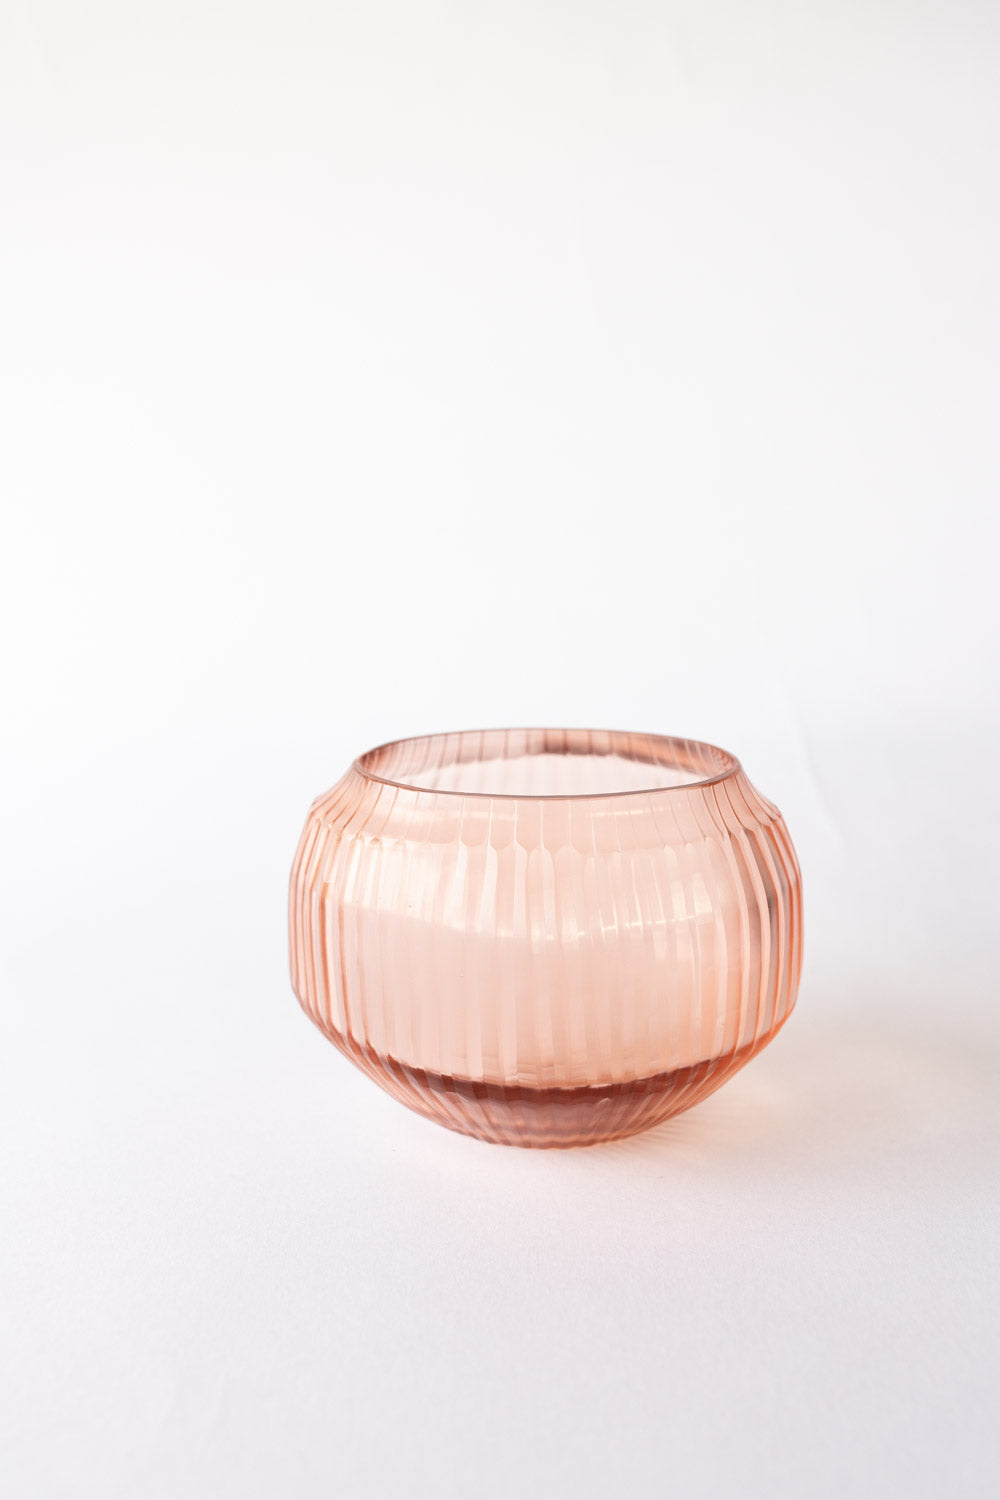 Brian Tunks Cut Glass Vase, Mini